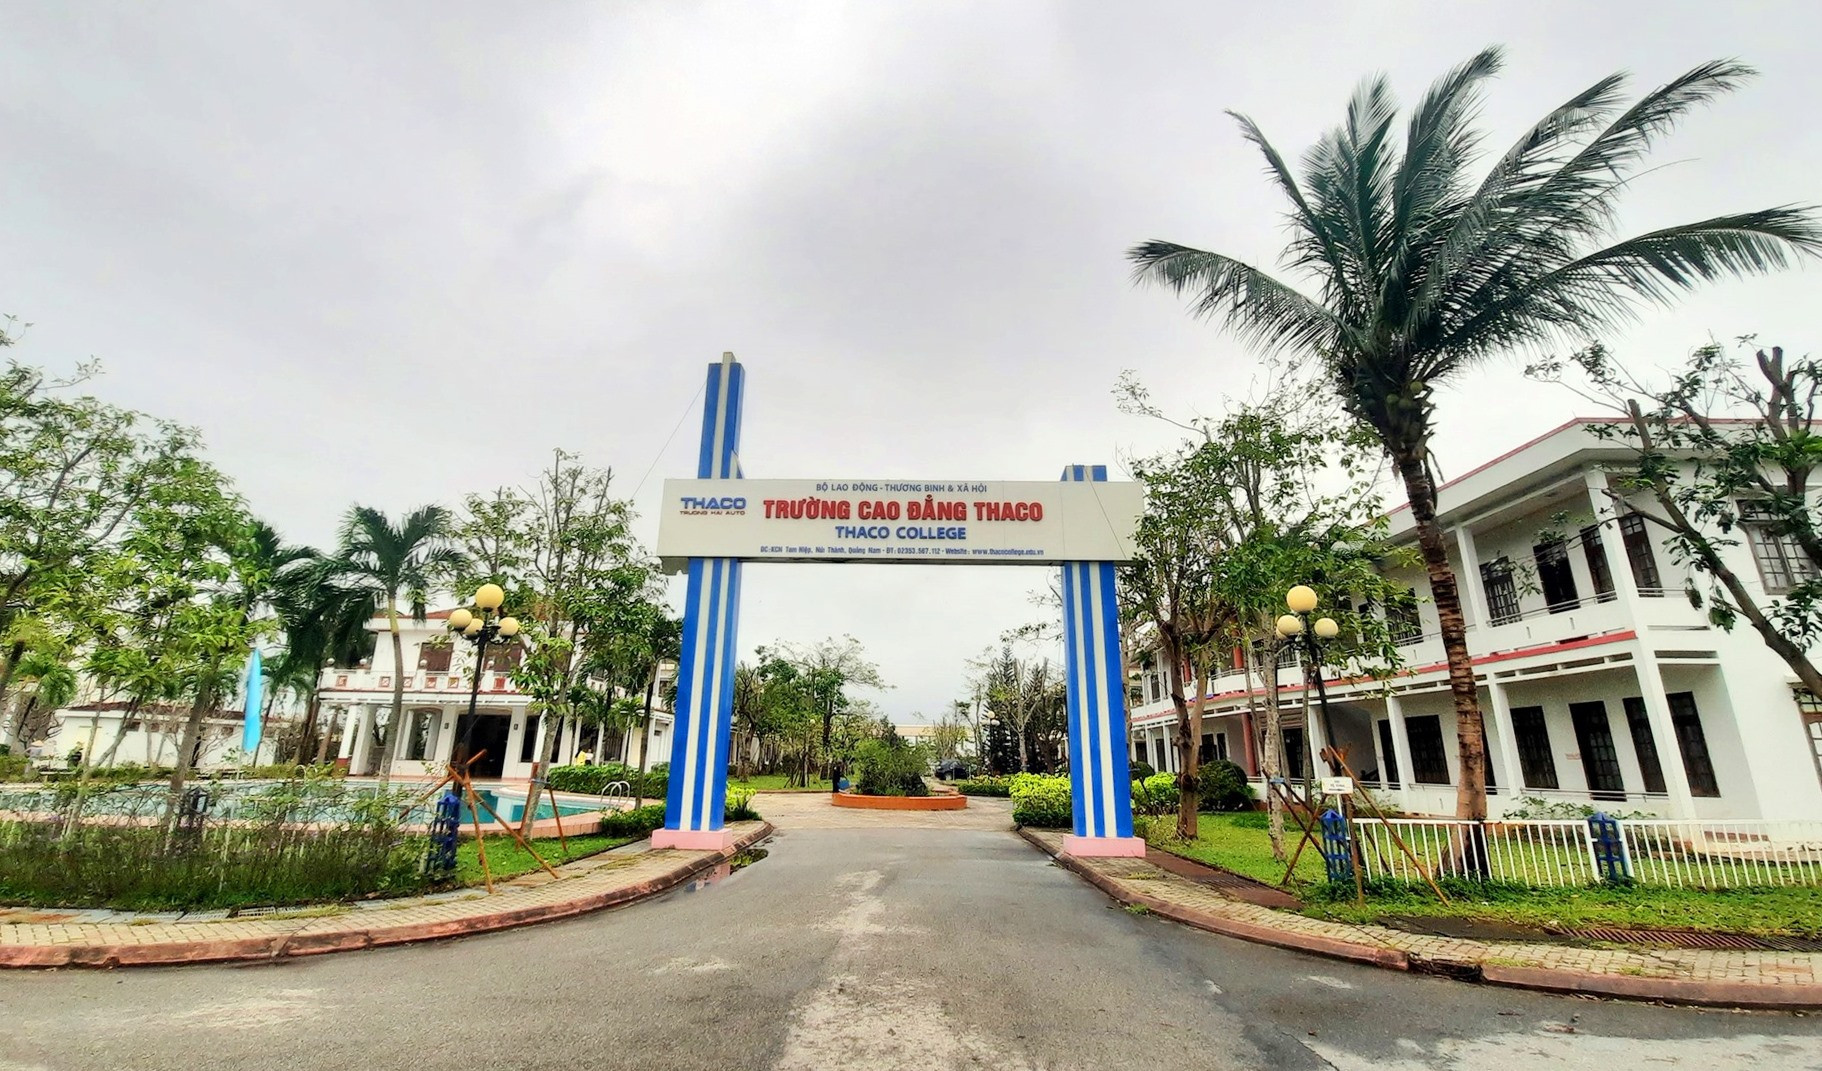 Năm học 2020 - 2021, Trường Cao đẳng Thaco tuyển sinh hơn 300 học sinh, sinh viên. Ảnh: Đ.ĐẠO